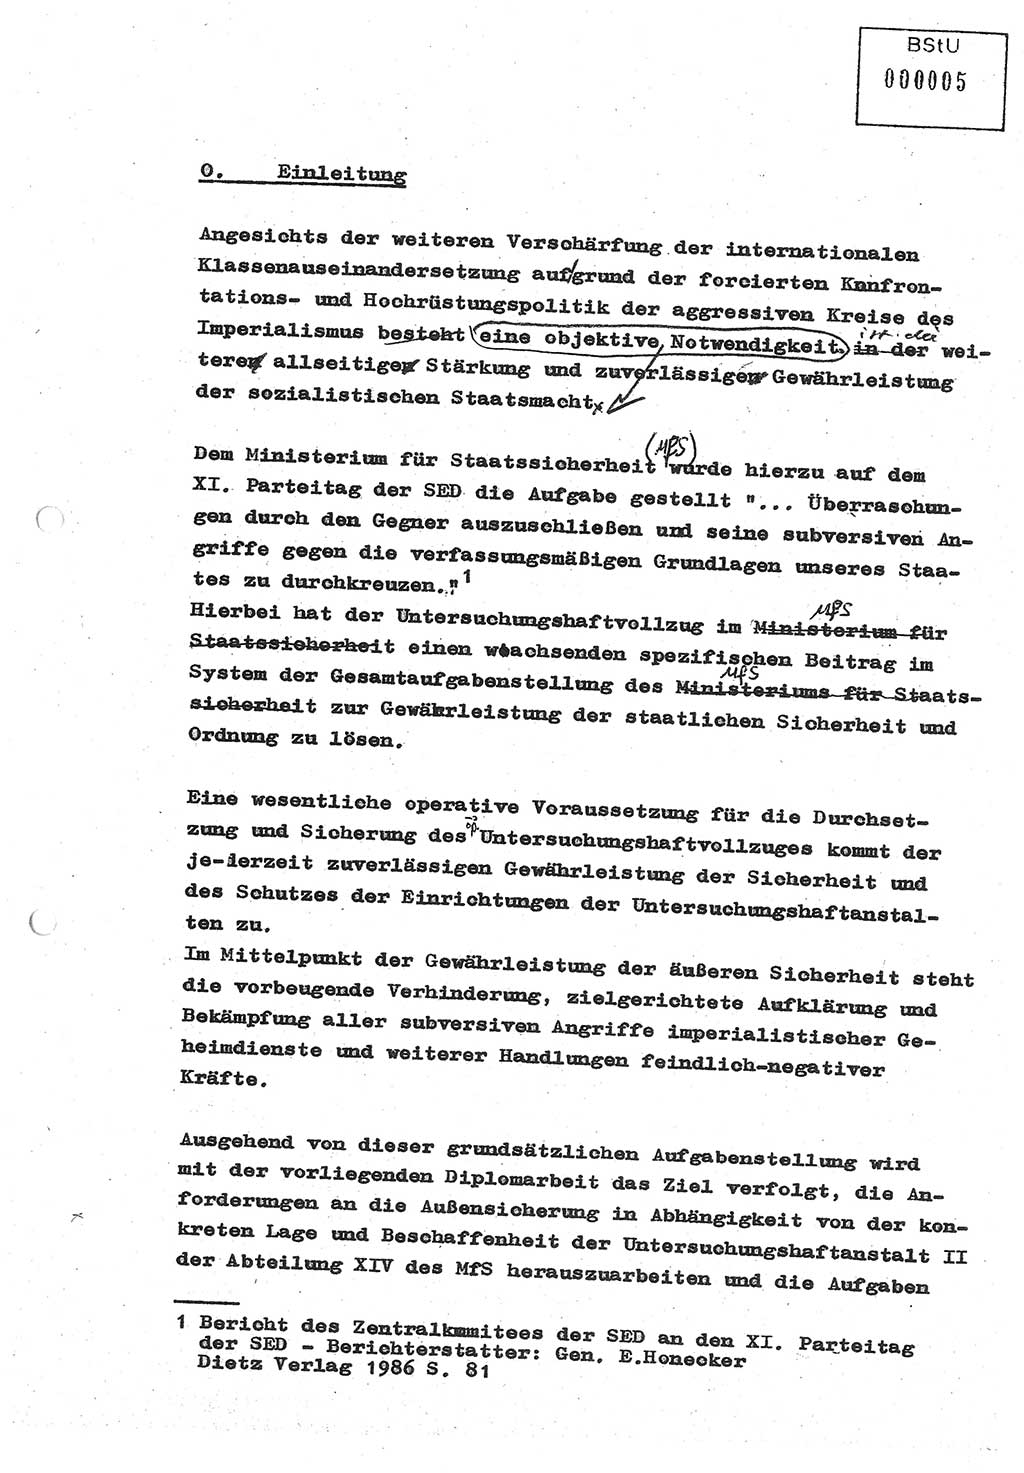 Diplomarbeit (Entwurf) Oberleutnant Peter Parke (Abt. ⅩⅣ), Ministerium für Staatssicherheit (MfS) [Deutsche Demokratische Republik (DDR)], Juristische Hochschule (JHS), Geheime Verschlußsache (GVS) o001-98/86, Potsdam 1986, Seite 5 (Dipl.-Arb. MfS DDR JHS GVS o001-98/86 1986, S. 5)